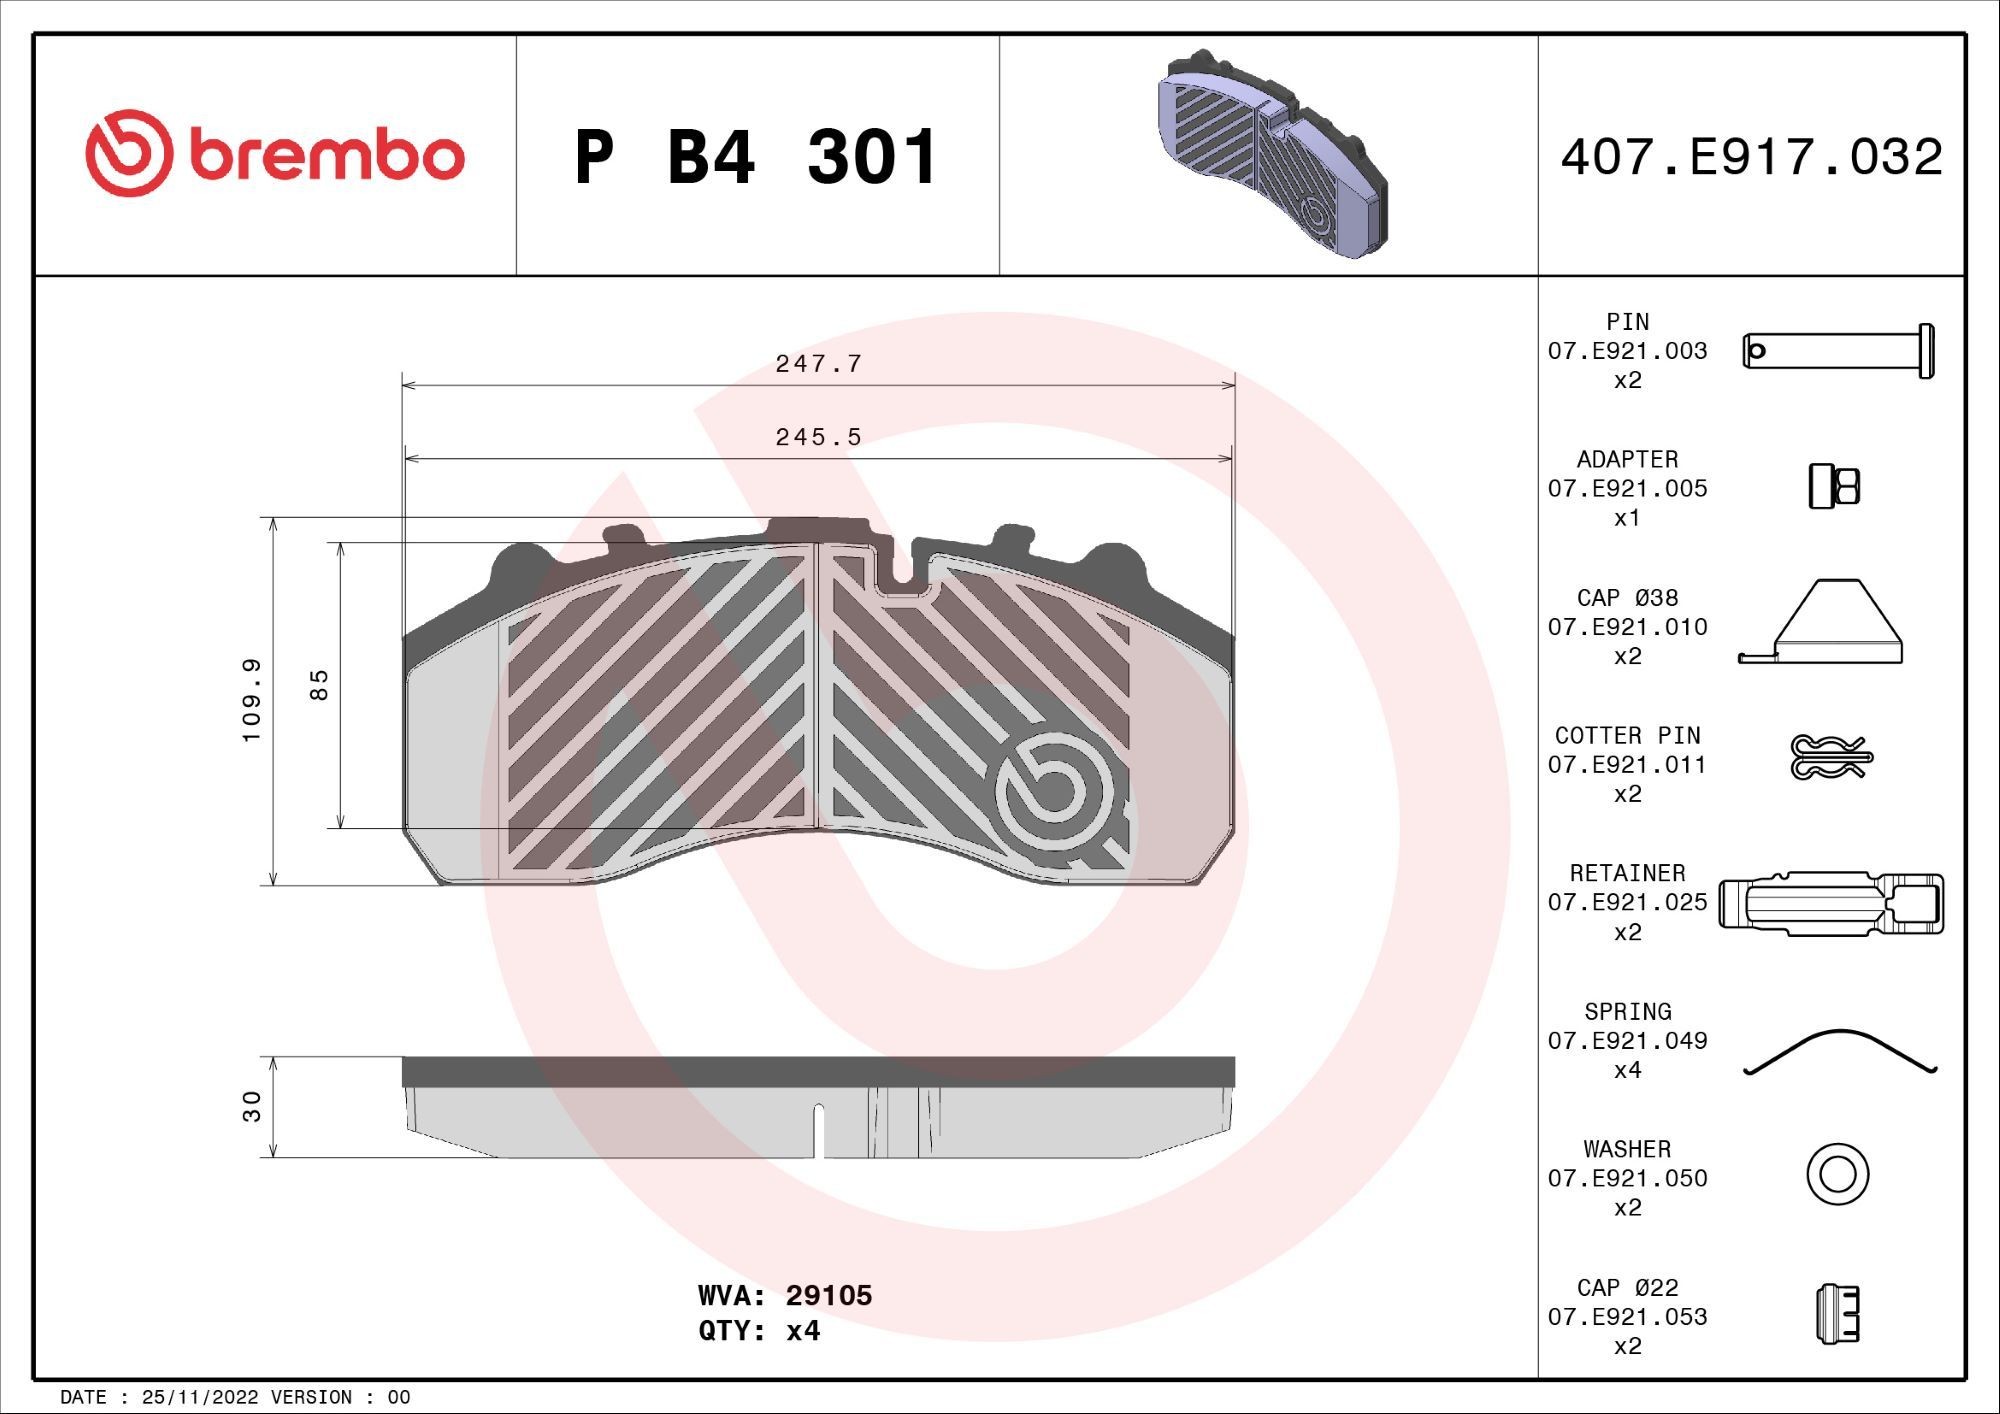 BREMBO PB4301 Komplet zavornih oblog, ploscne (kolutne) zavore A008 420 6020